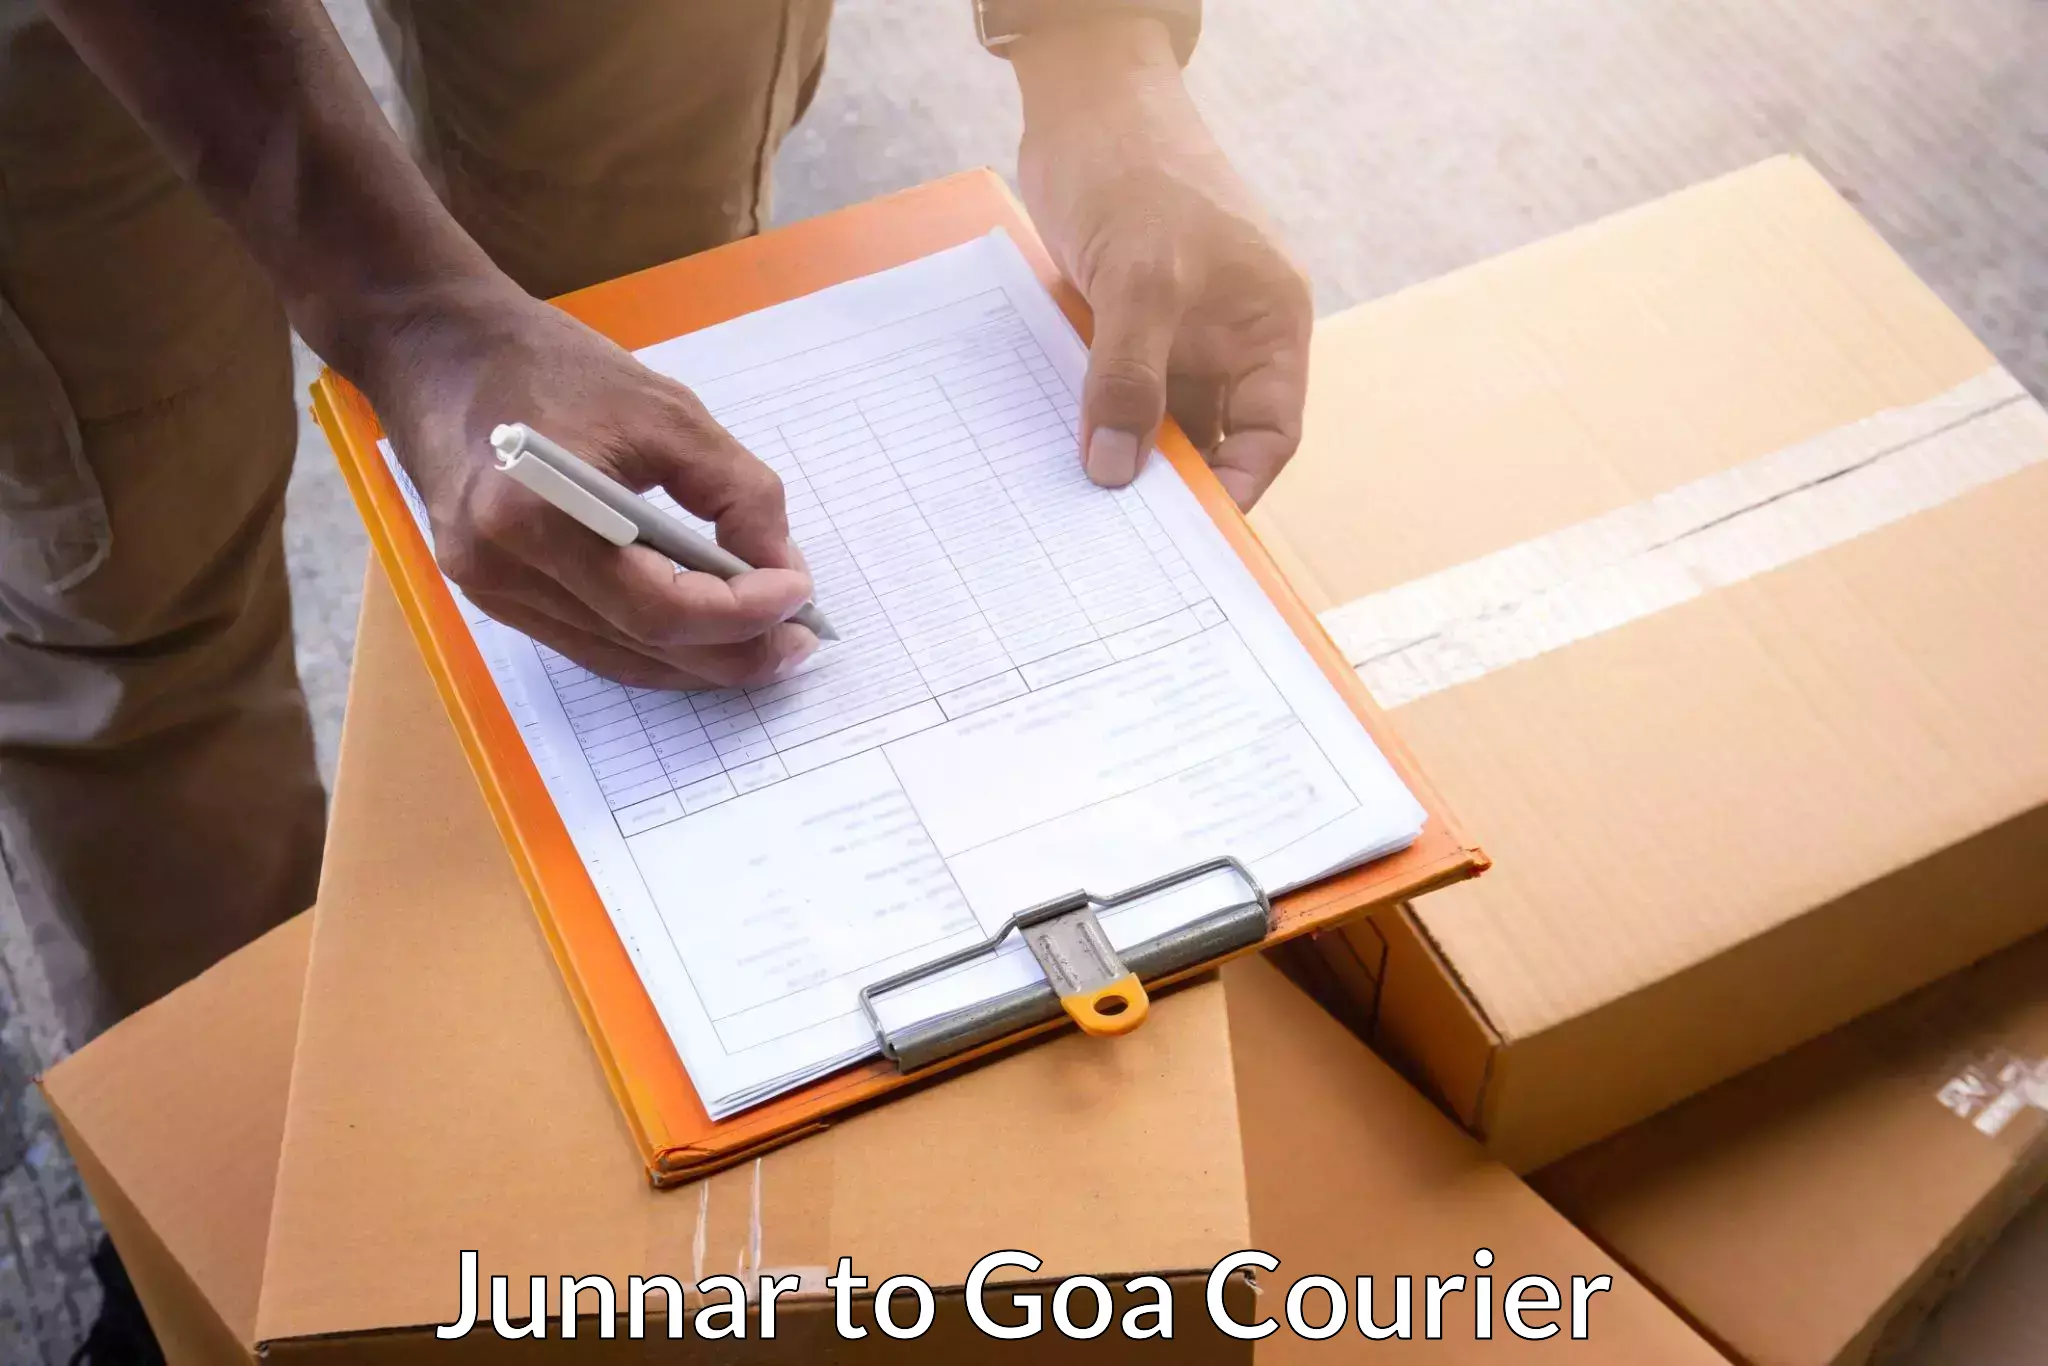 Premium courier services Junnar to Mormugao Port